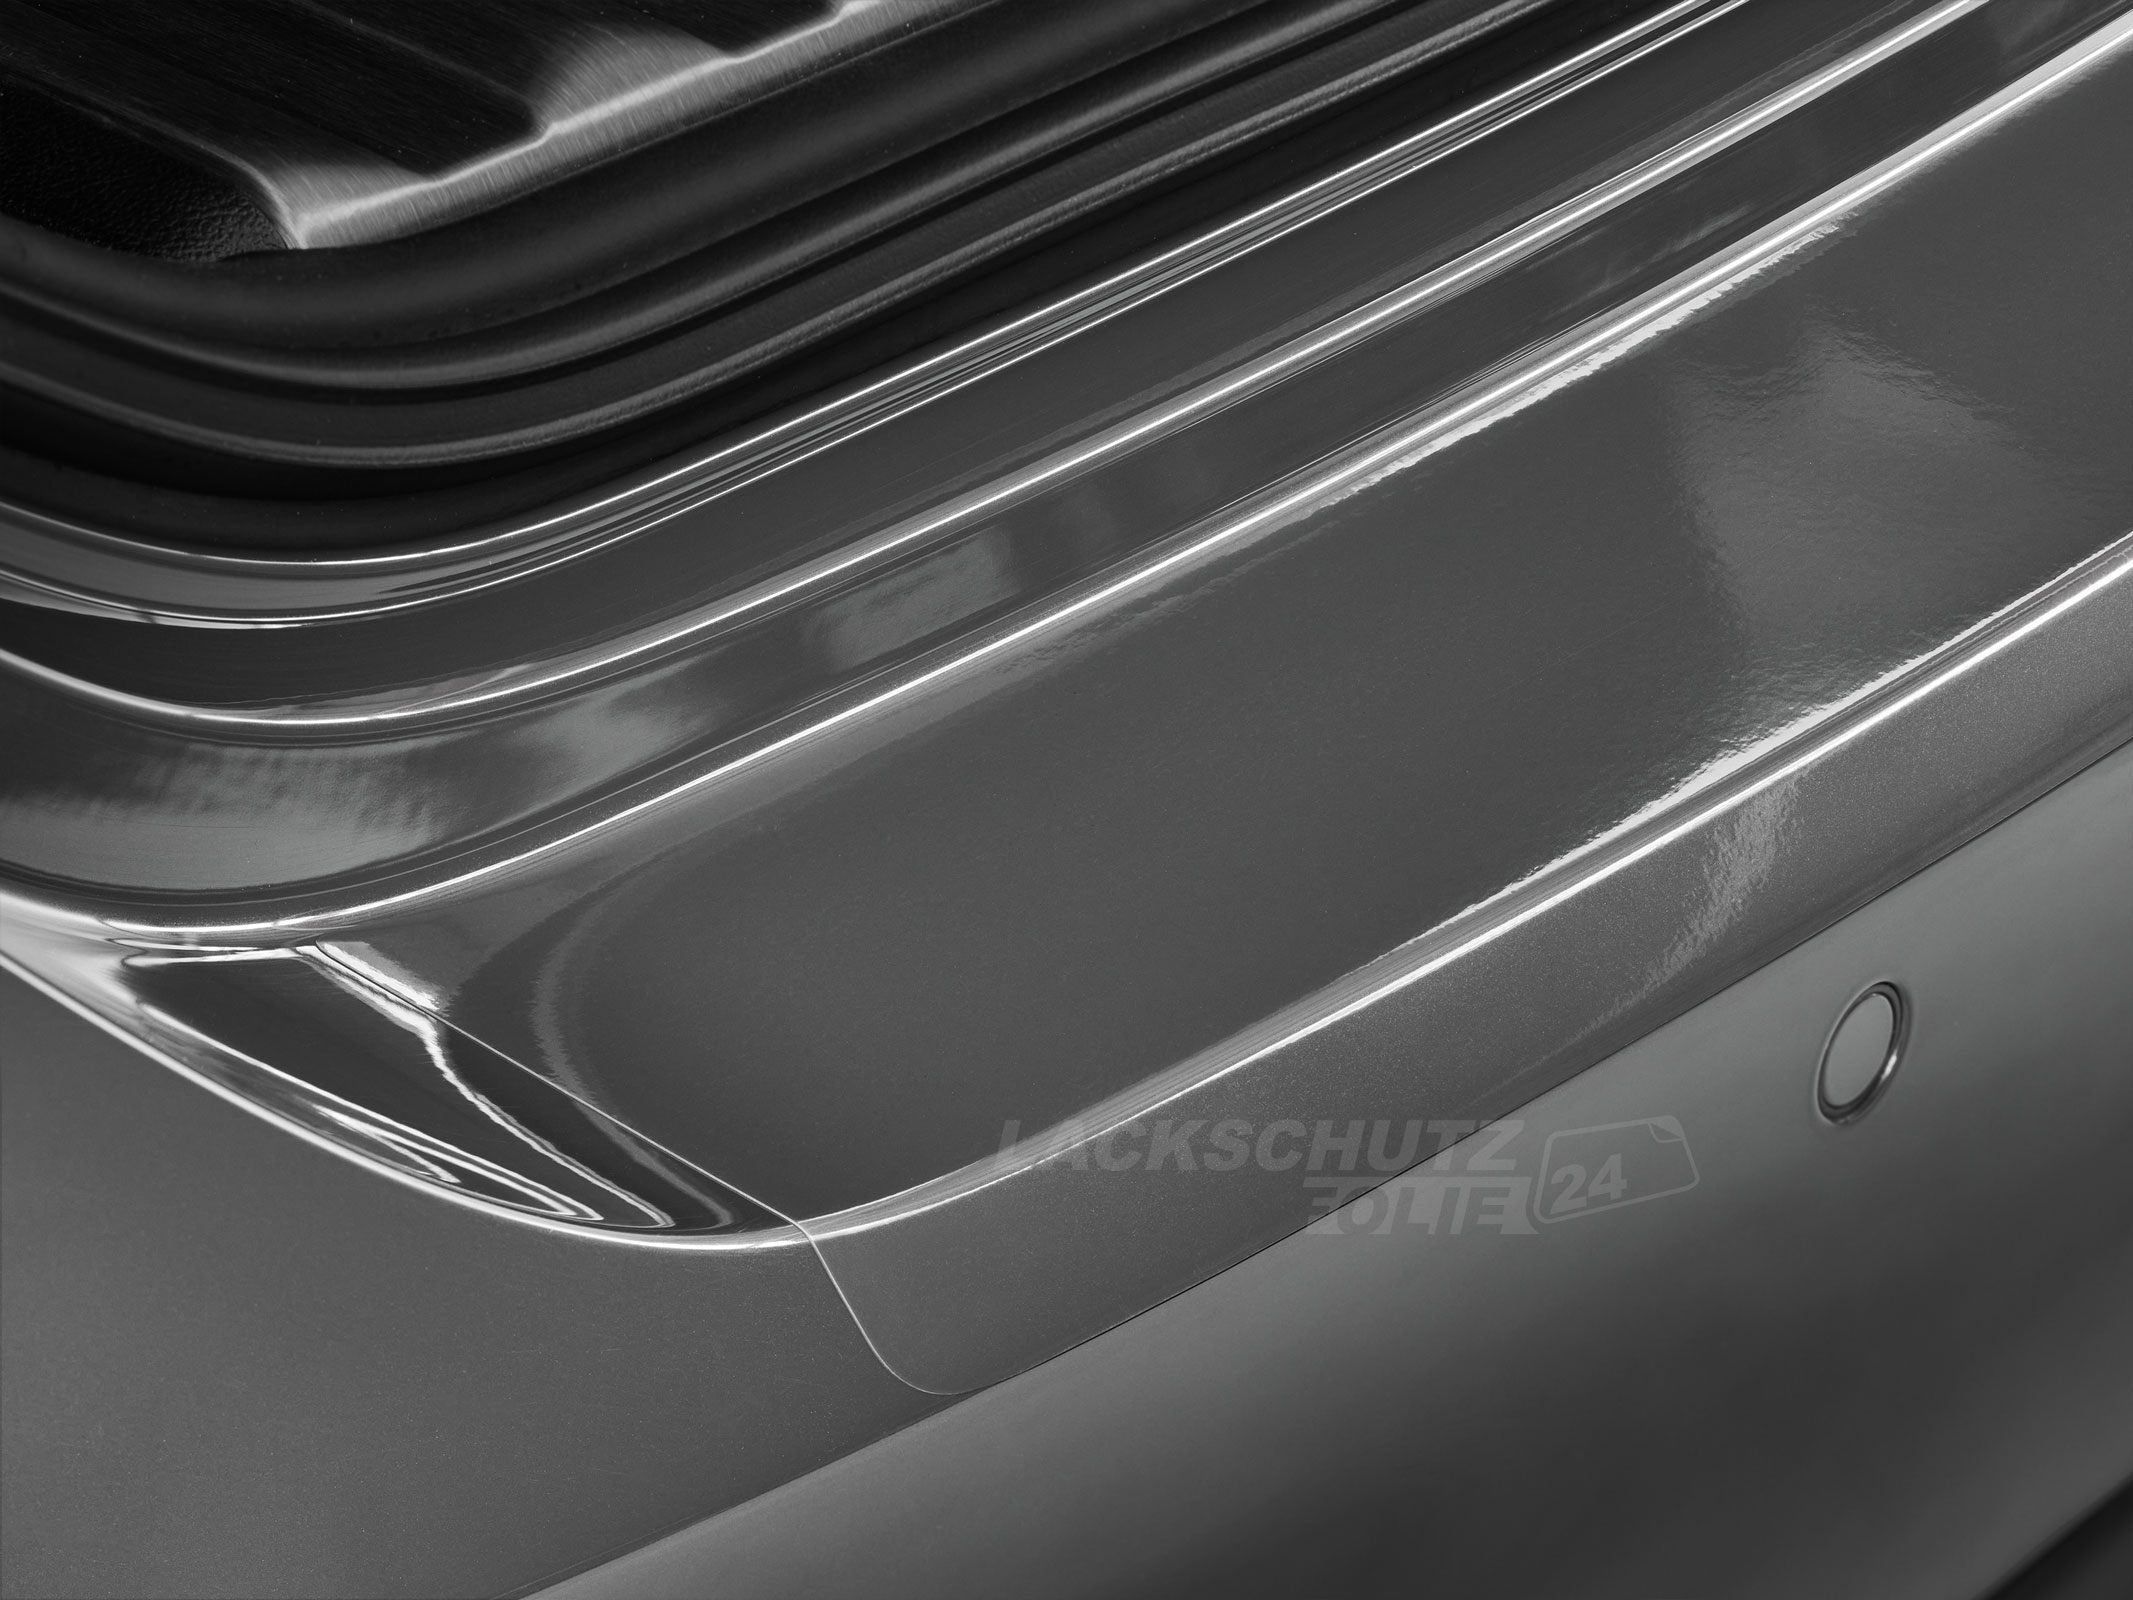 Ladekantenschutzfolie - Transparent Glatt Hochglänzend 150 µm stark für Ford Galaxy  (I) bis BJ 04/2000